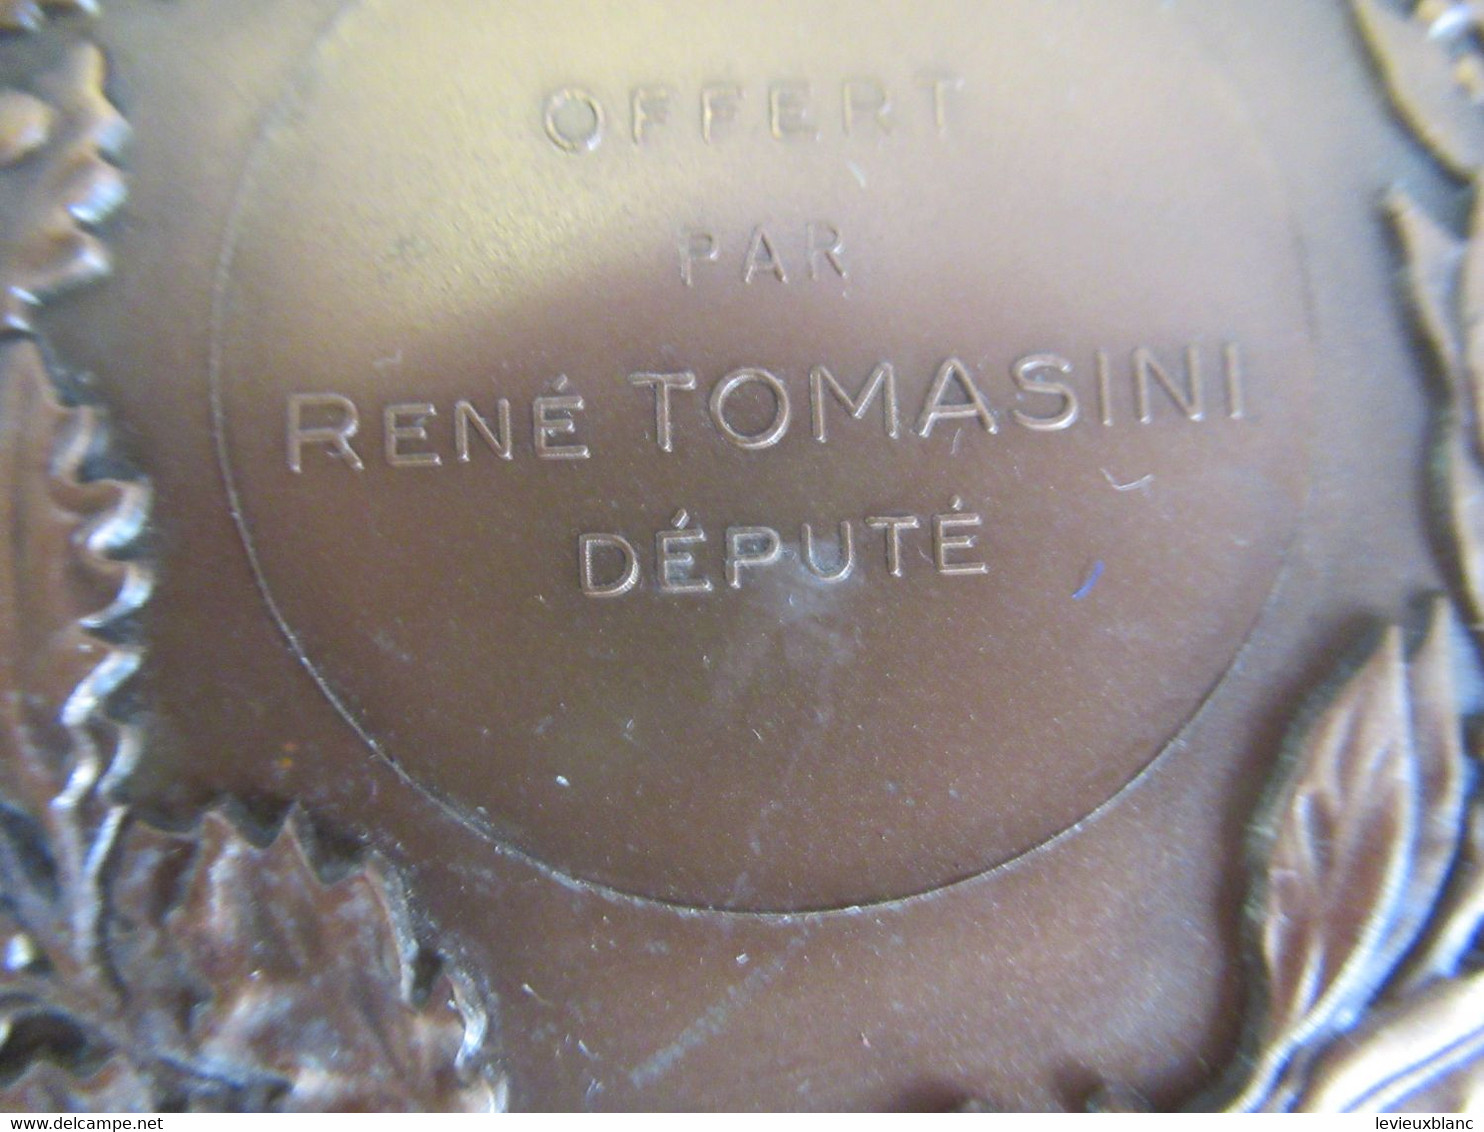 Médaille De Table Ancienne/RF/Liberté Egalité Fraternité/Offert Par René TOMASINI Député /Eure/H DUBOIS/ 1974     MED406 - Professionnels / De Société